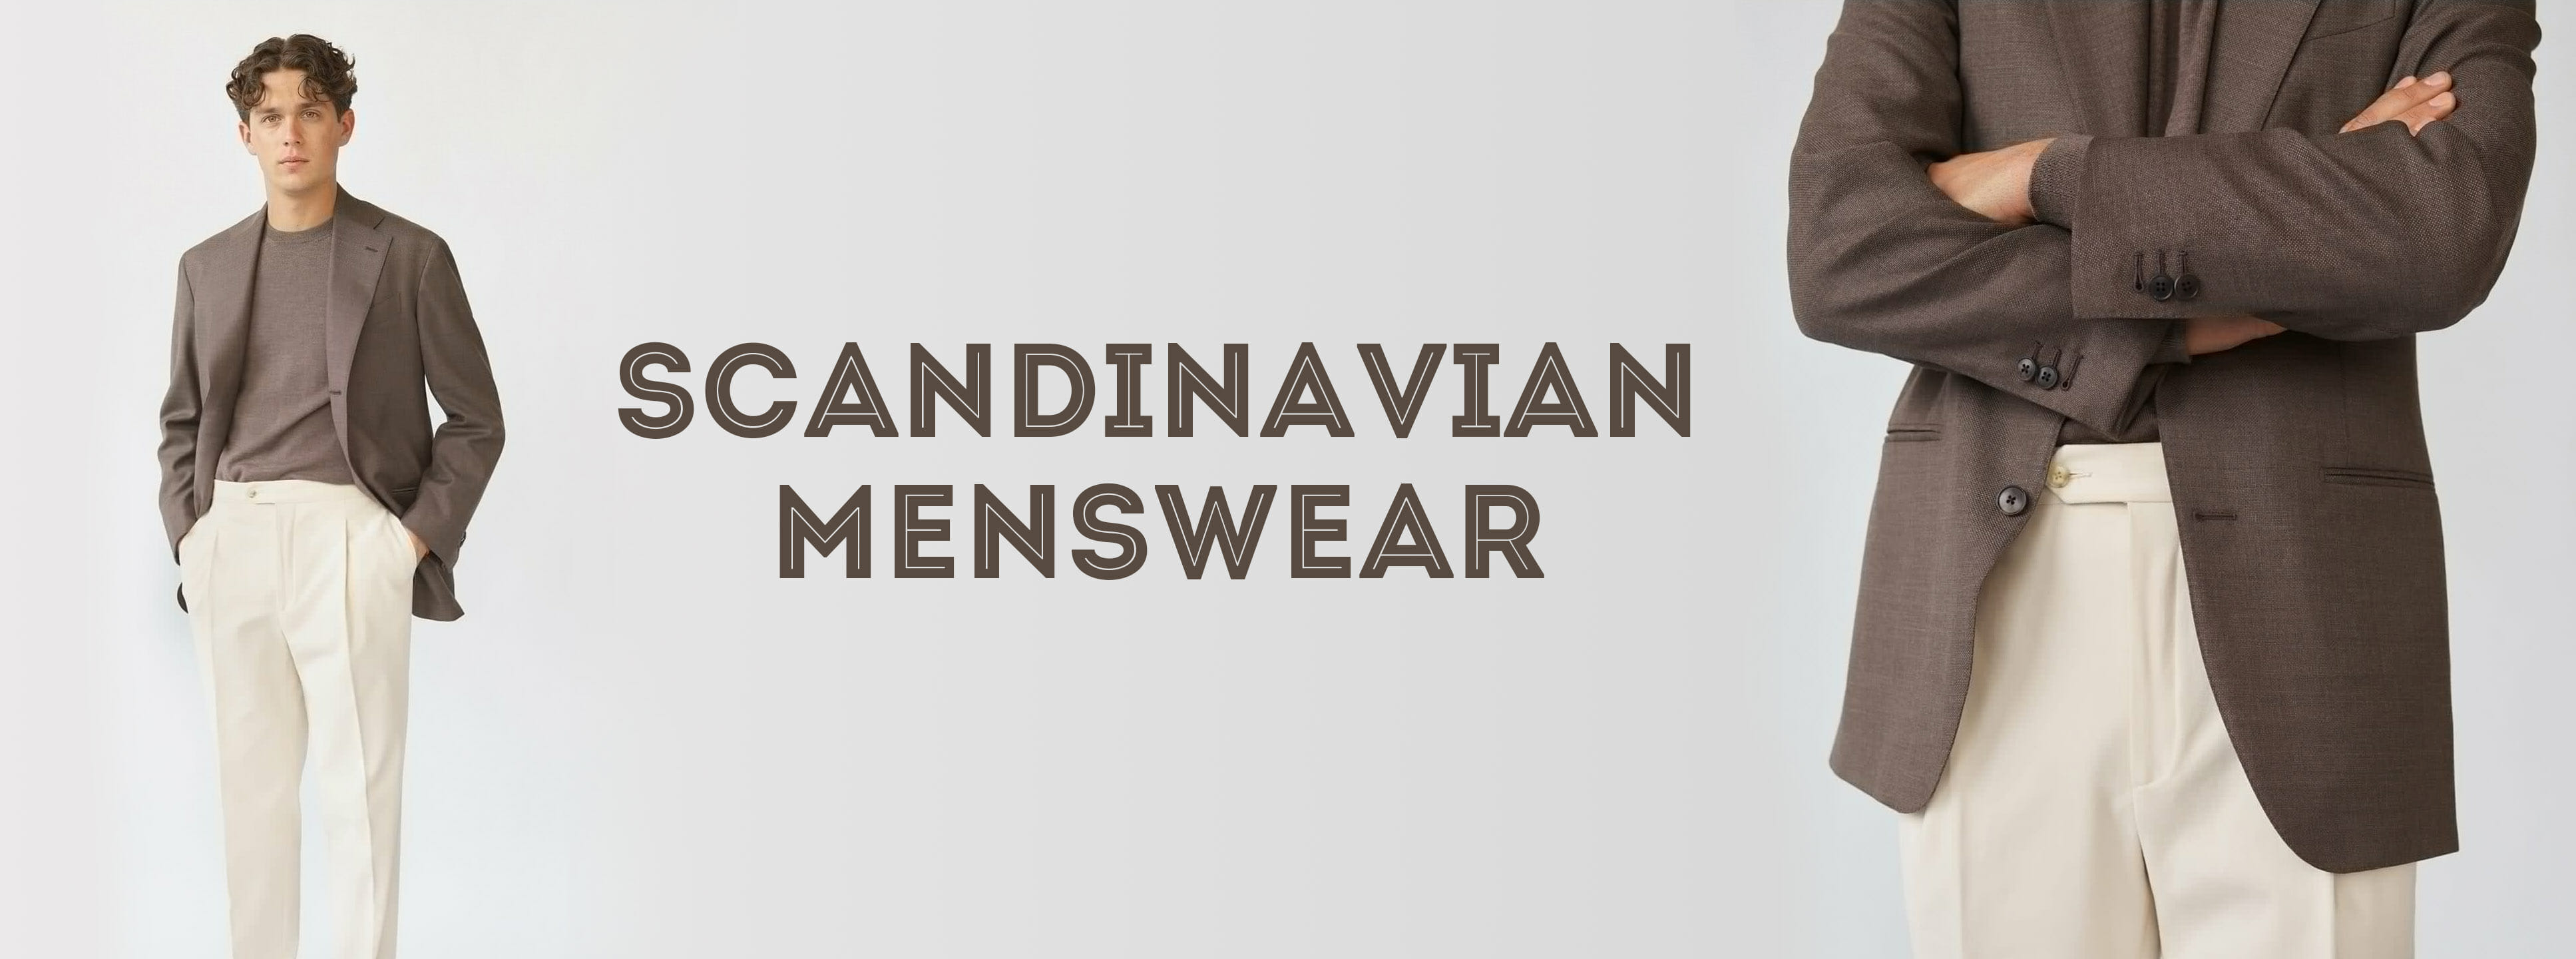 Scandinavian Menswear – Styles Sweden, Norway, & More